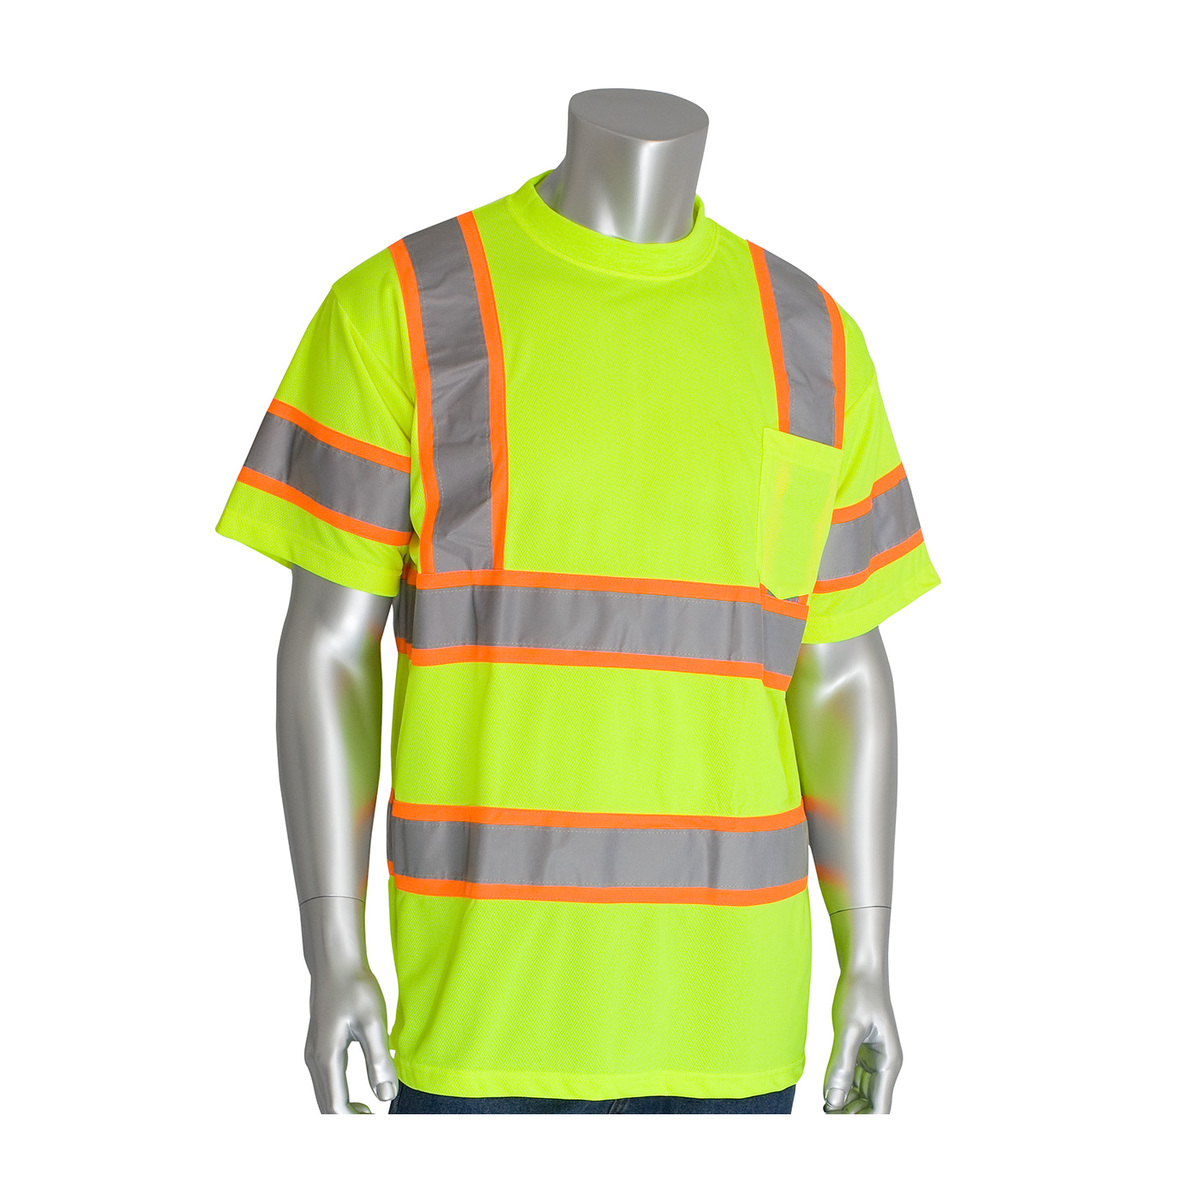 PIP® Medium Hi-Viz Yellow/Hi-Viz Orange 1 Polyester/Birdseye Mesh Two-Tone Shirt